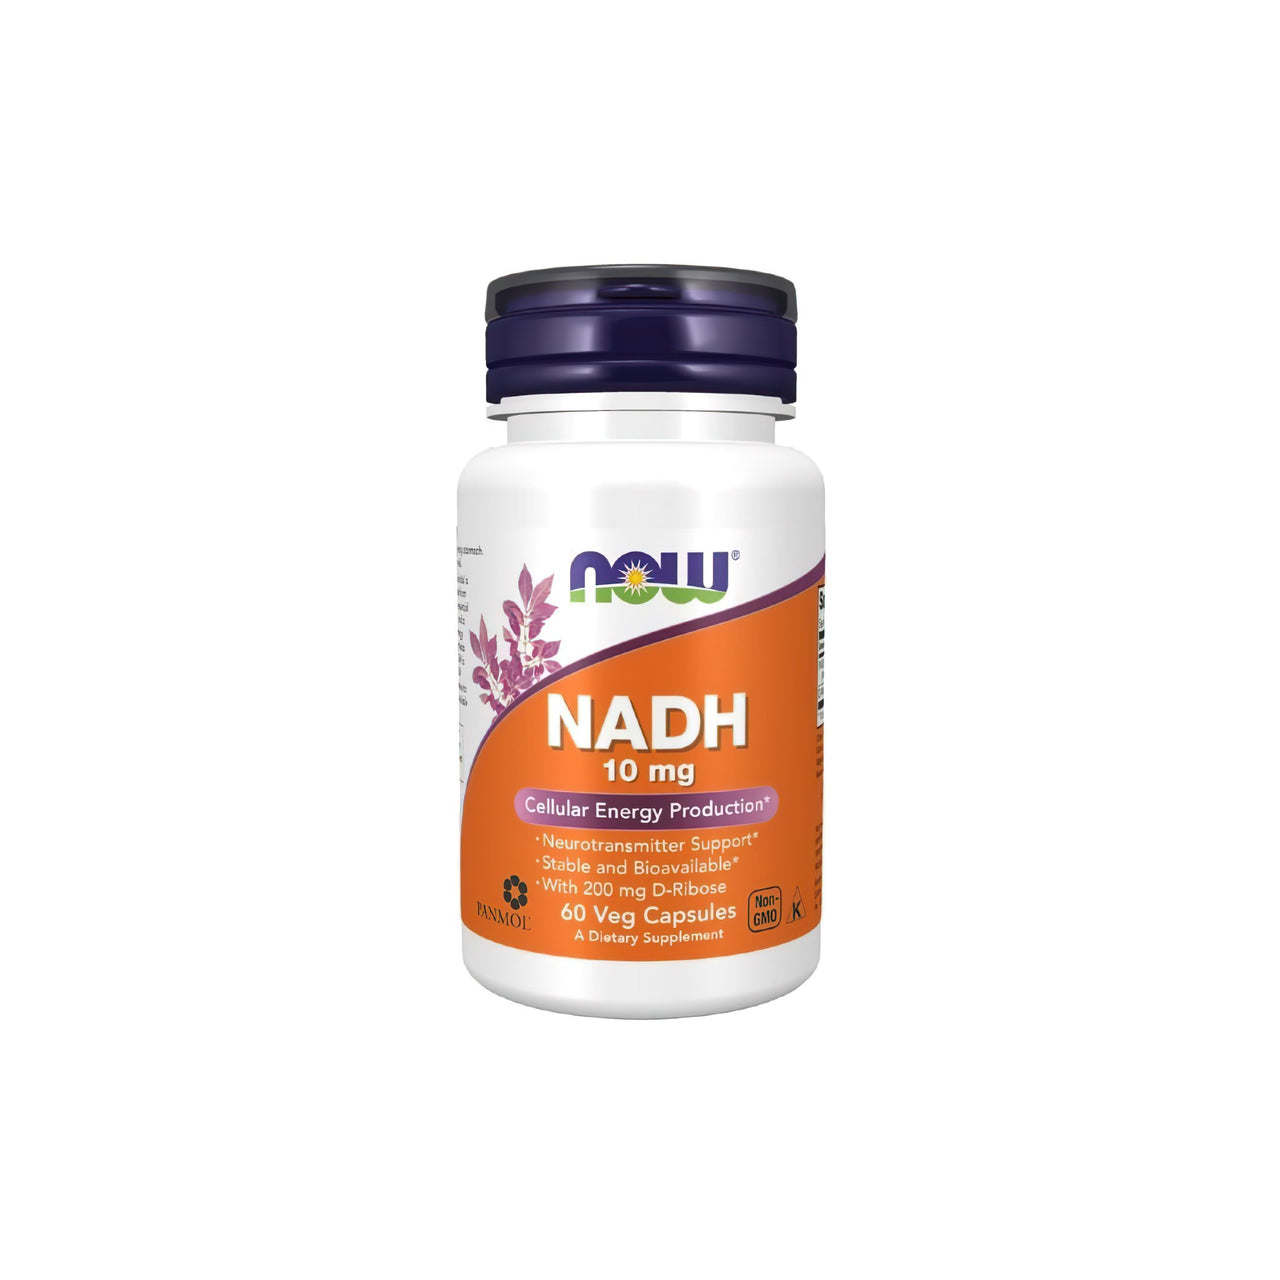 Now Foods NADH 10 mg 60 pflanzliche Kapseln sind ein natürliches Nahrungsergänzungsmittel, das Müdigkeit und Erschöpfung wirksam bekämpfen kann. Diese Kapseln regen die Energieproduktion im Körper an, was zu einem höheren Energieniveau und einem besseren allgemeinen Wohlbefinden führt.